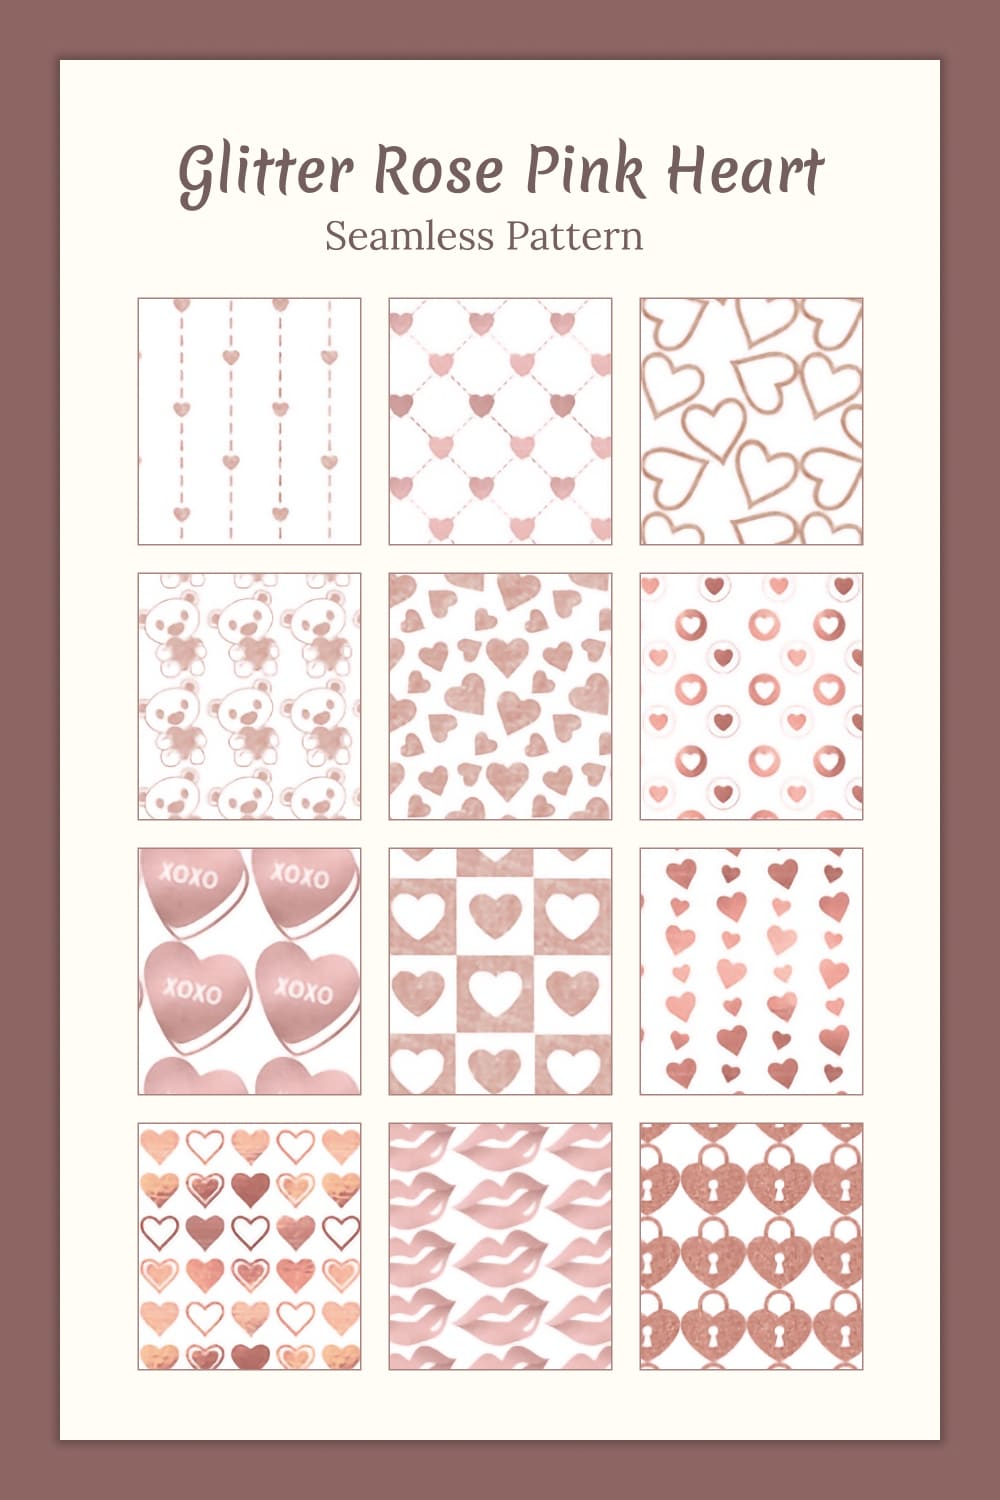 Glitter Rose Pink Heart Seamless Pattern - Pinterest.